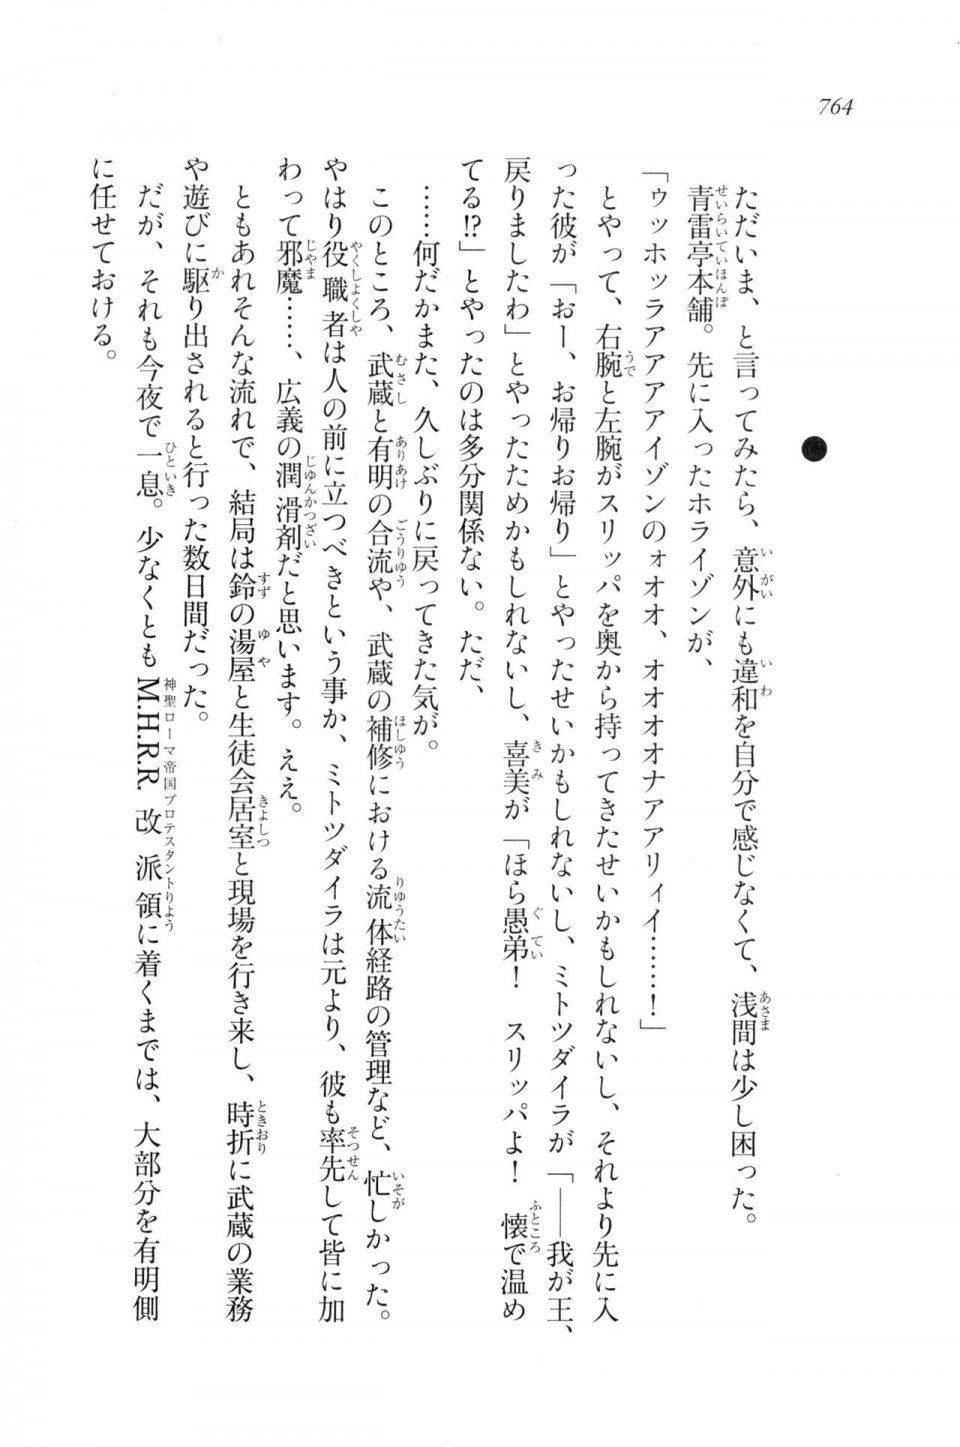 Kyoukai Senjou no Horizon LN Vol 20(8B) - Photo #764